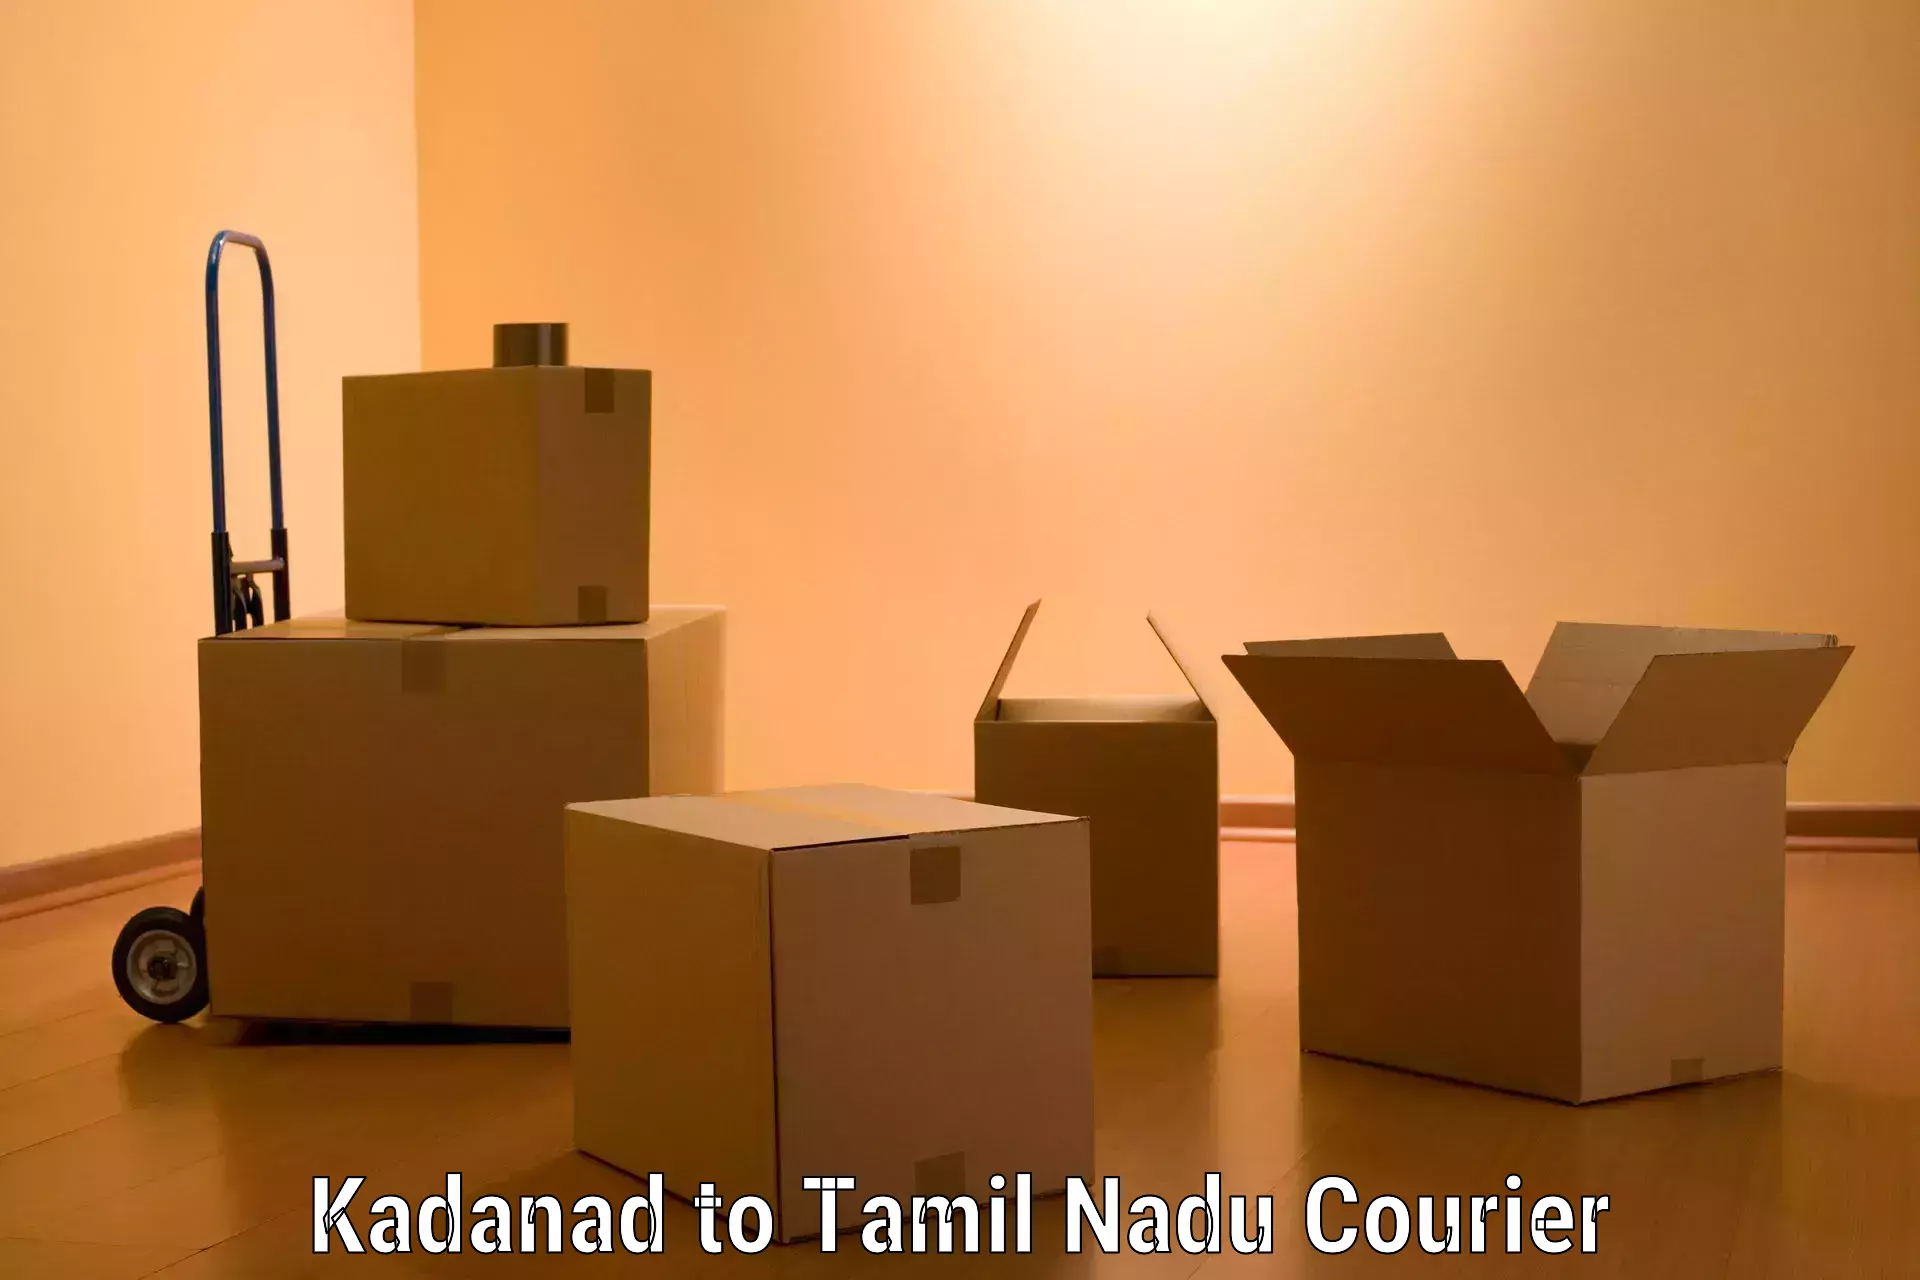 Furniture moving experts Kadanad to Perundurai